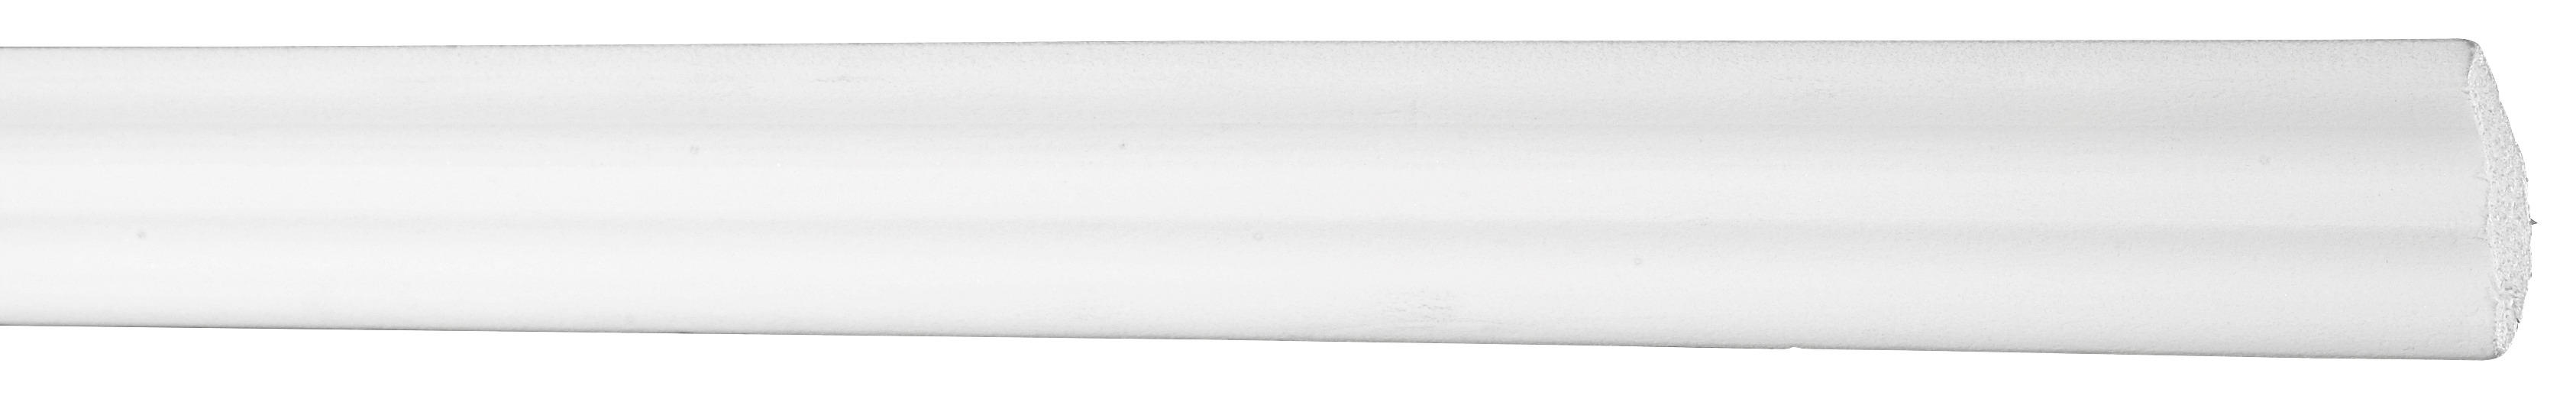 Zierprofil Weiß B/h/l: Ca. 1,5x2,5x200 Cm Zierprofil_e25 - weiß (200,00/1,50/2,50cm)